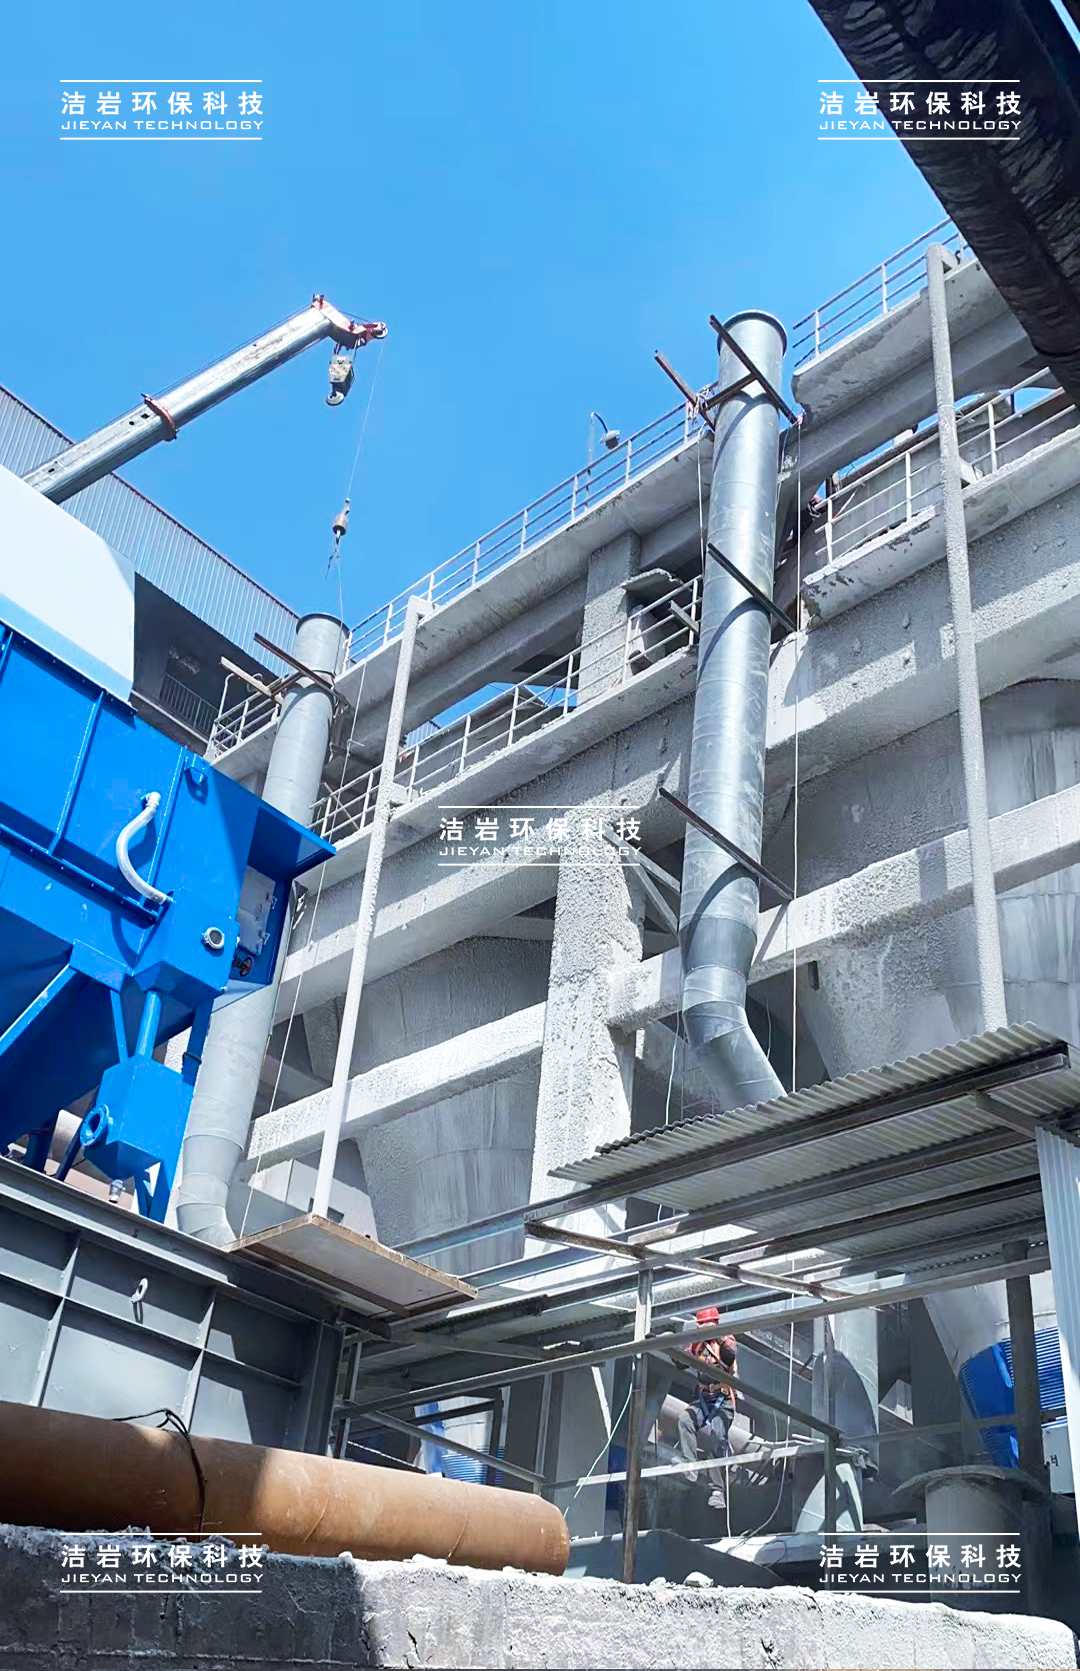 石灰消化器湿法除尘项目紧锣密鼓安装中，上海洁岩助力水城钢铁烧结系统超低排放改造